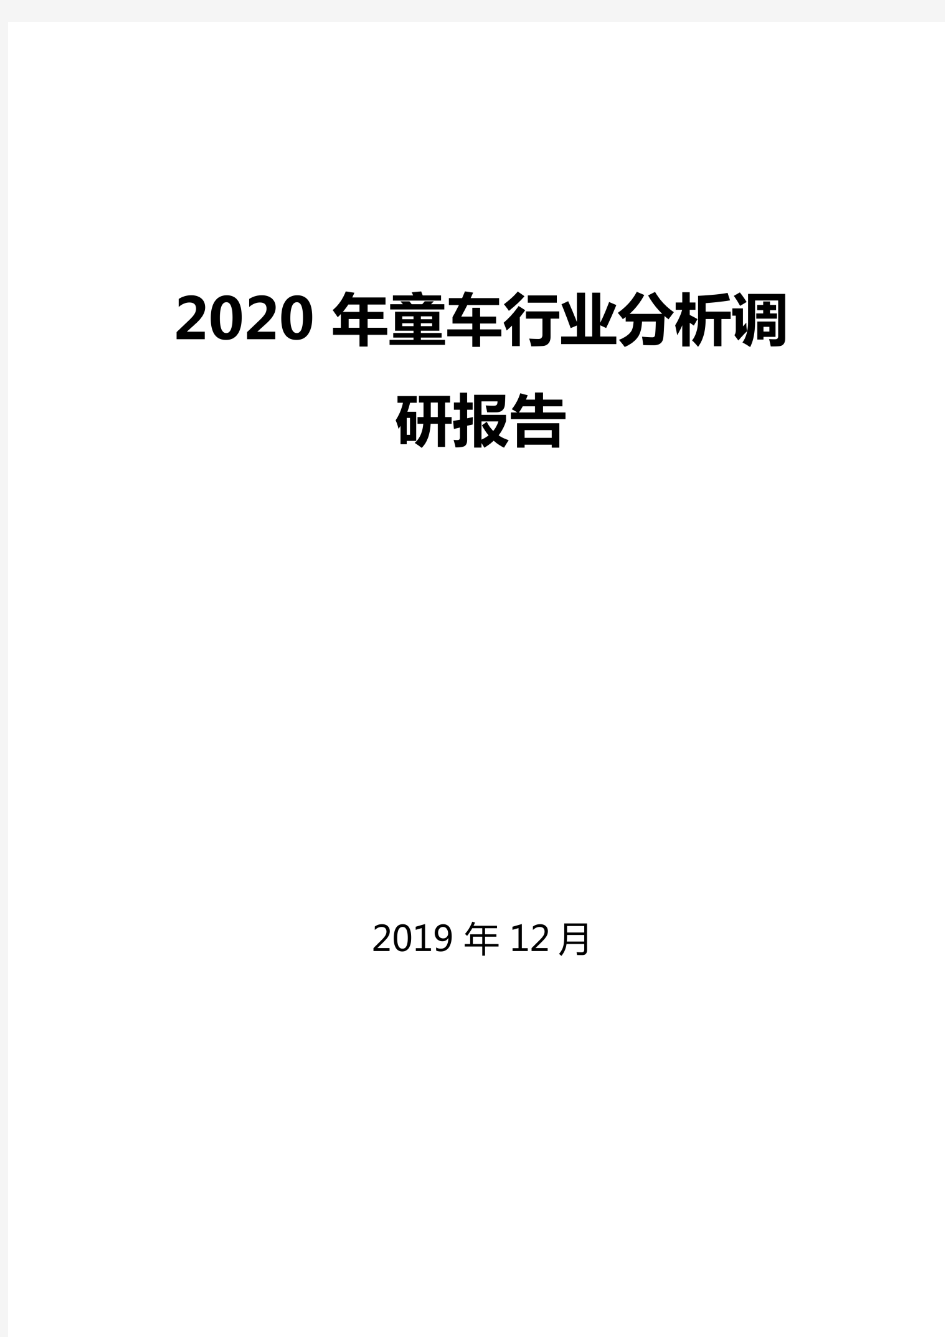 2020年童车行业分析调研报告